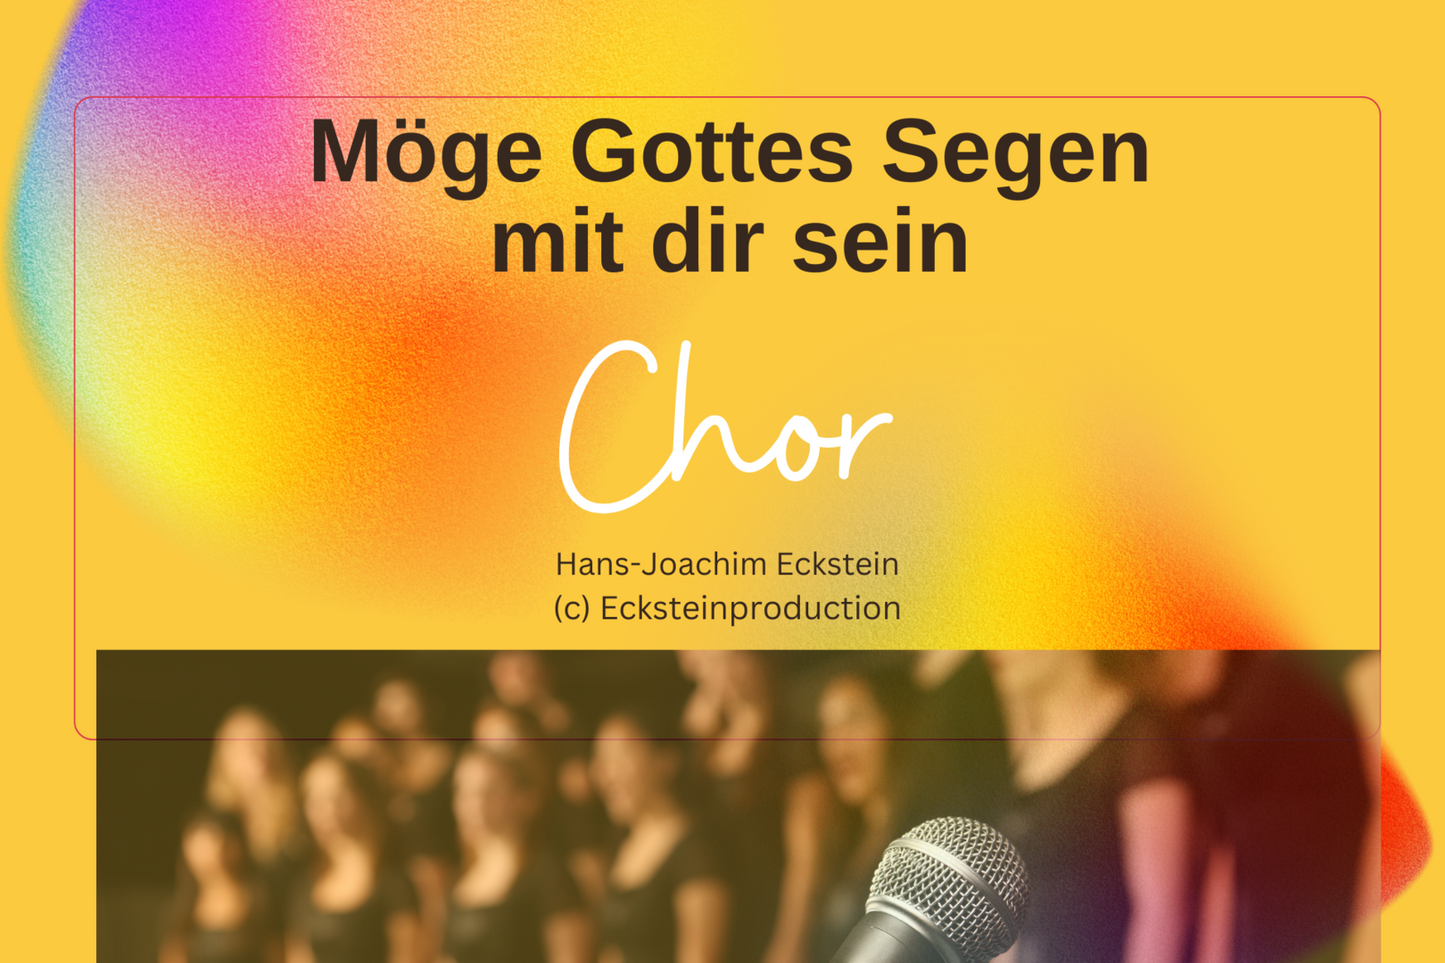 Möge Gottes Segen mit dir sein (Chor) Hans-Joachim Eckstein